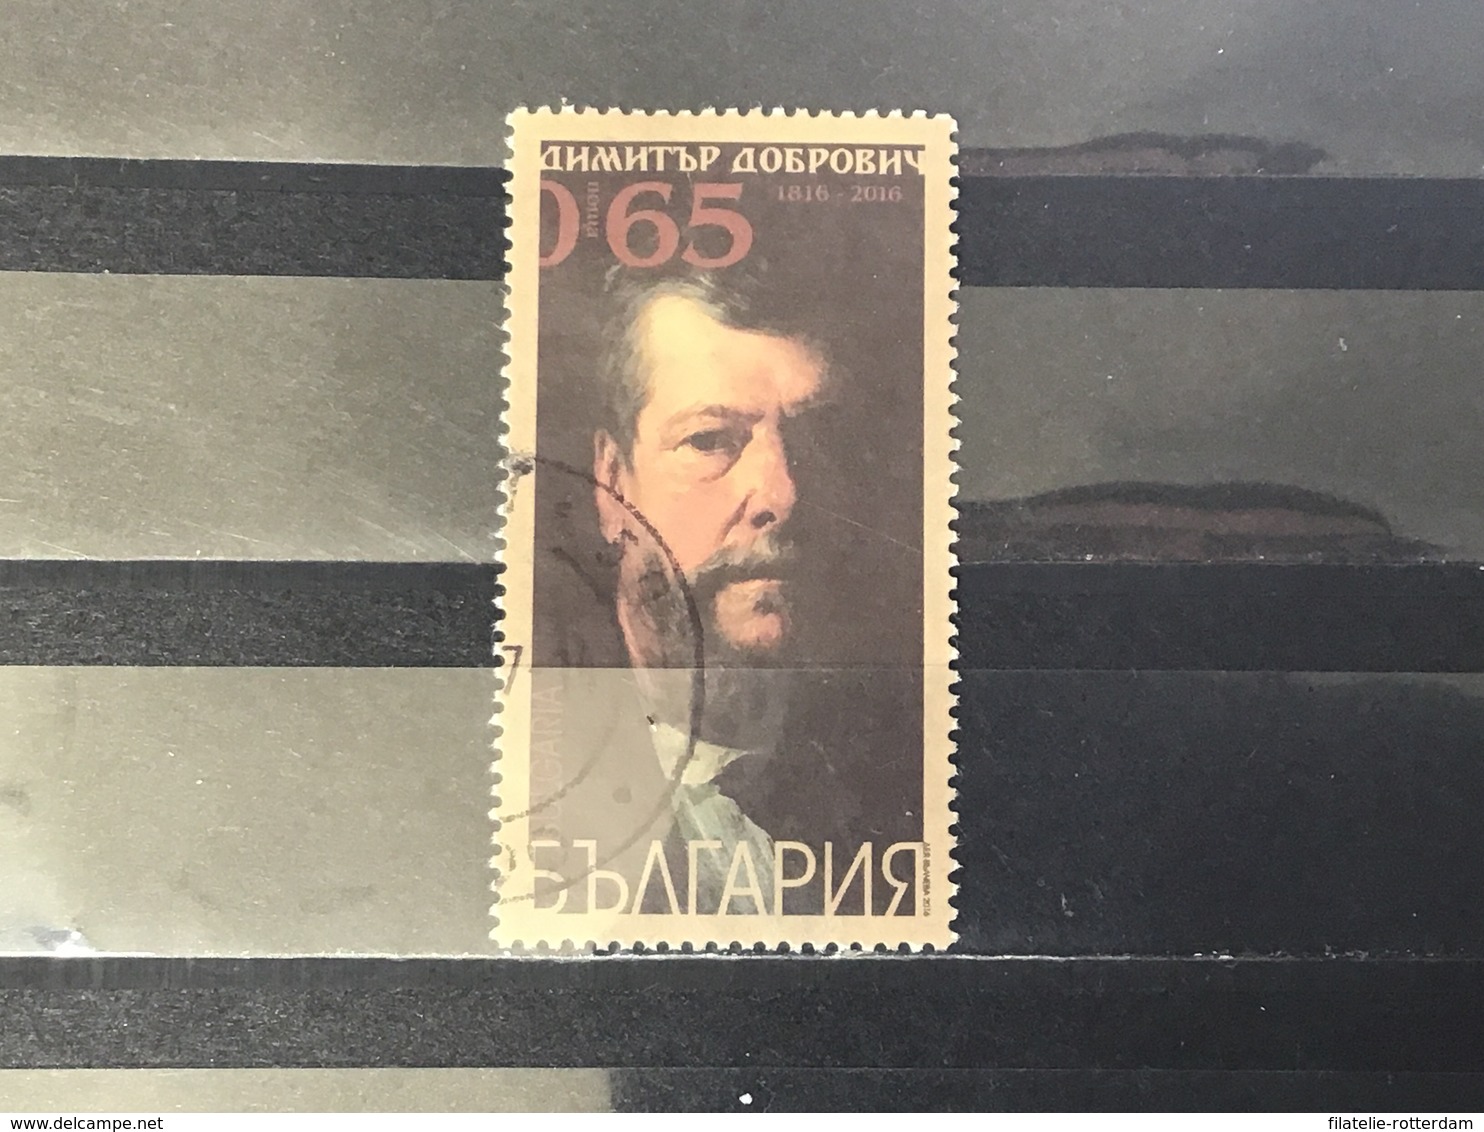 Bulgarije / Bulgaria - Dimitar Dobrovich (0.65) 2016 - Used Stamps